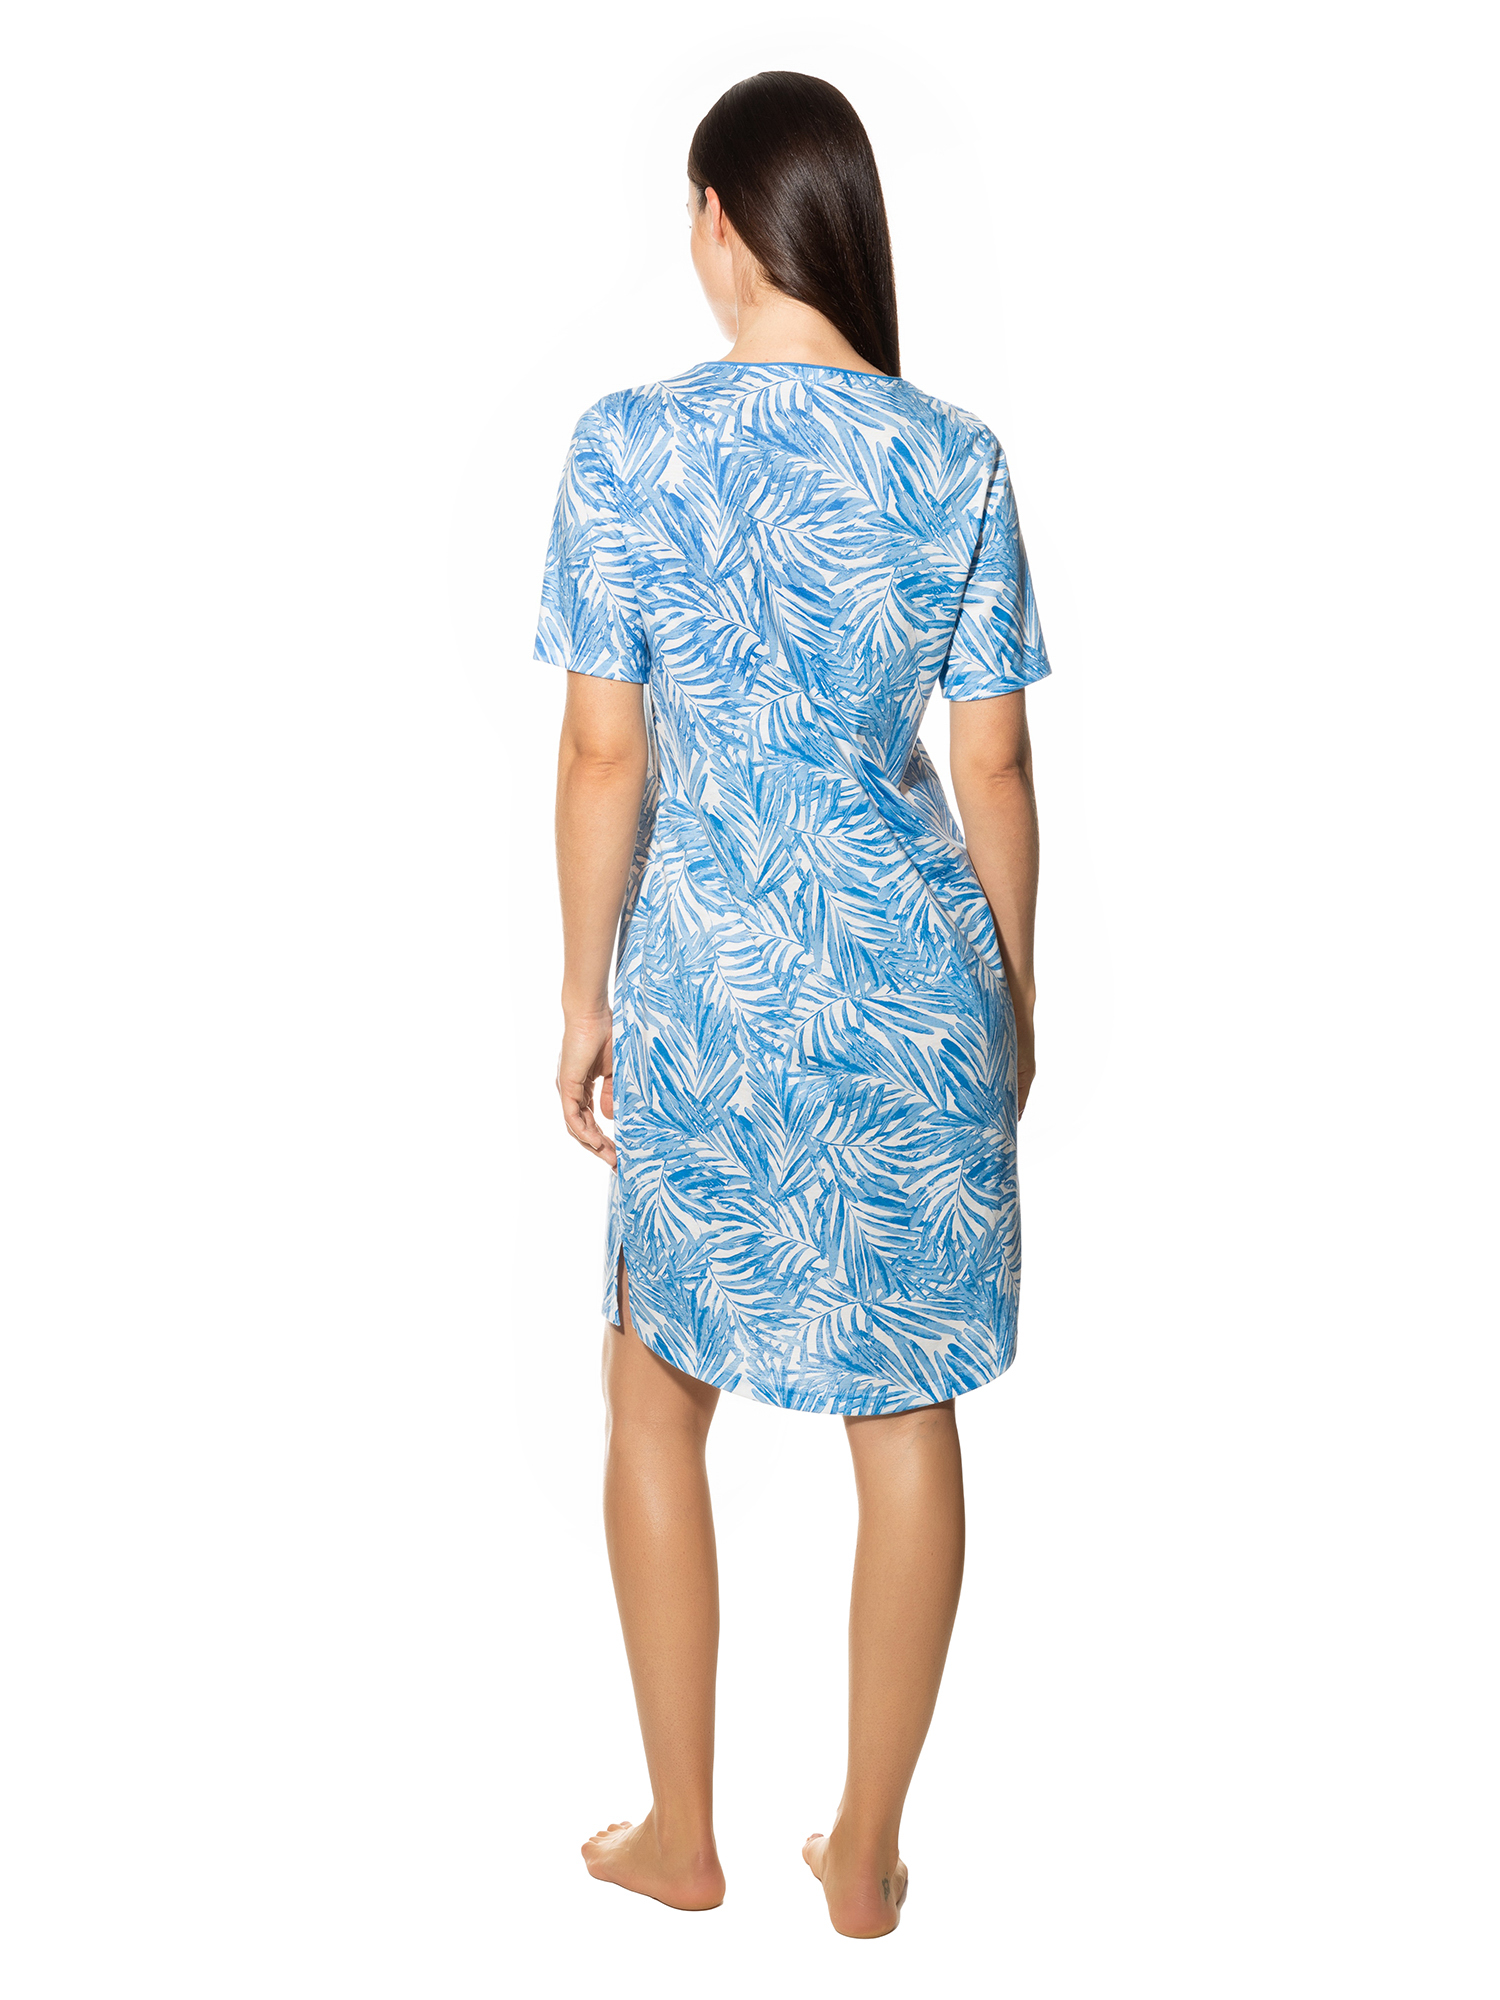 Damen-Nachthemd  mit Allover-Blätter-Print aus reinem Baumwoll-Jersey